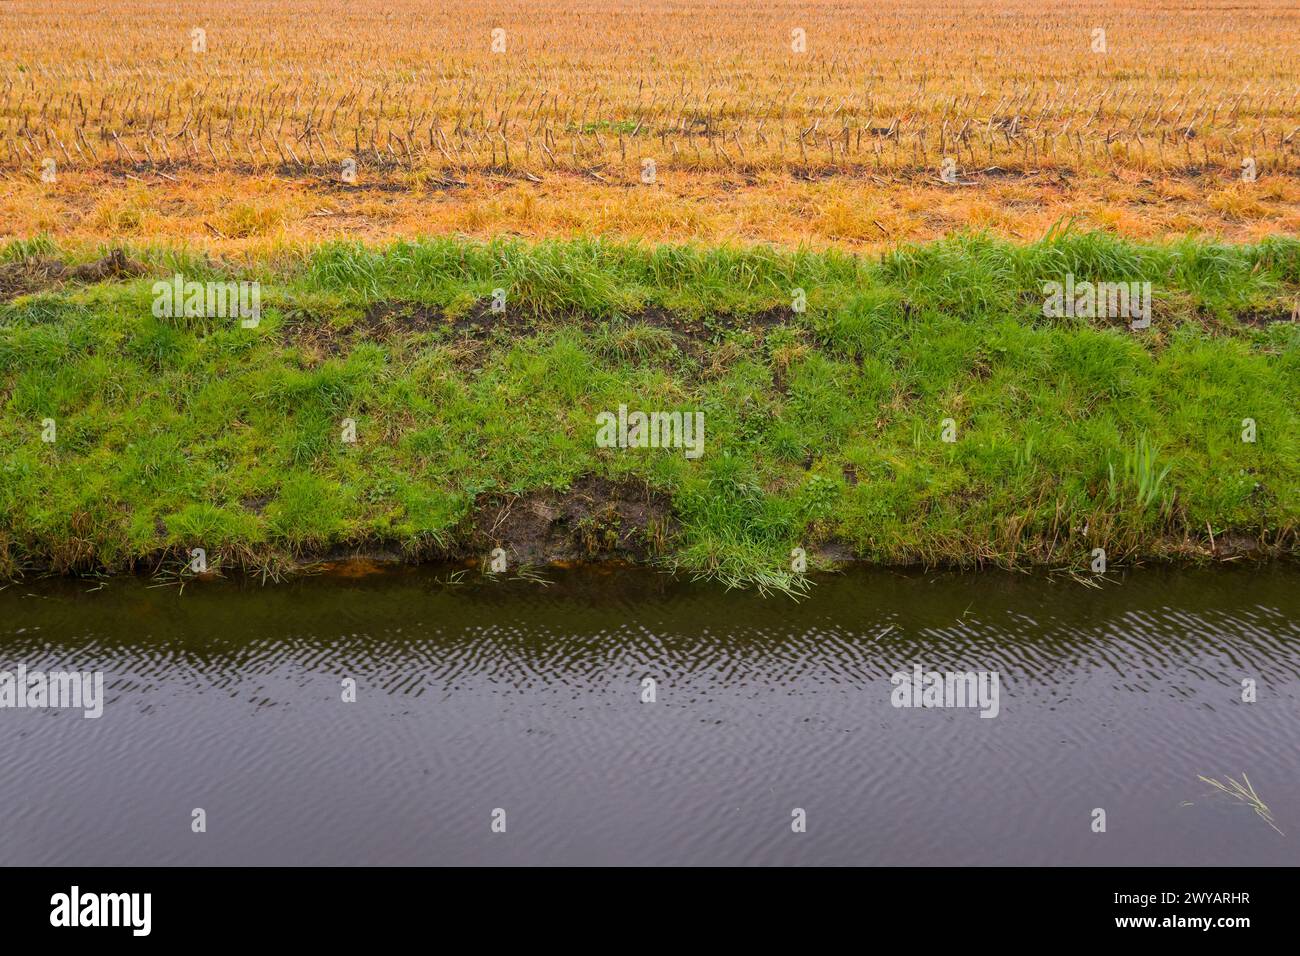 Quelle der Wasserverschmutzung: Glyphosat auf ein Maisfeld neben einem Graben Stockfoto